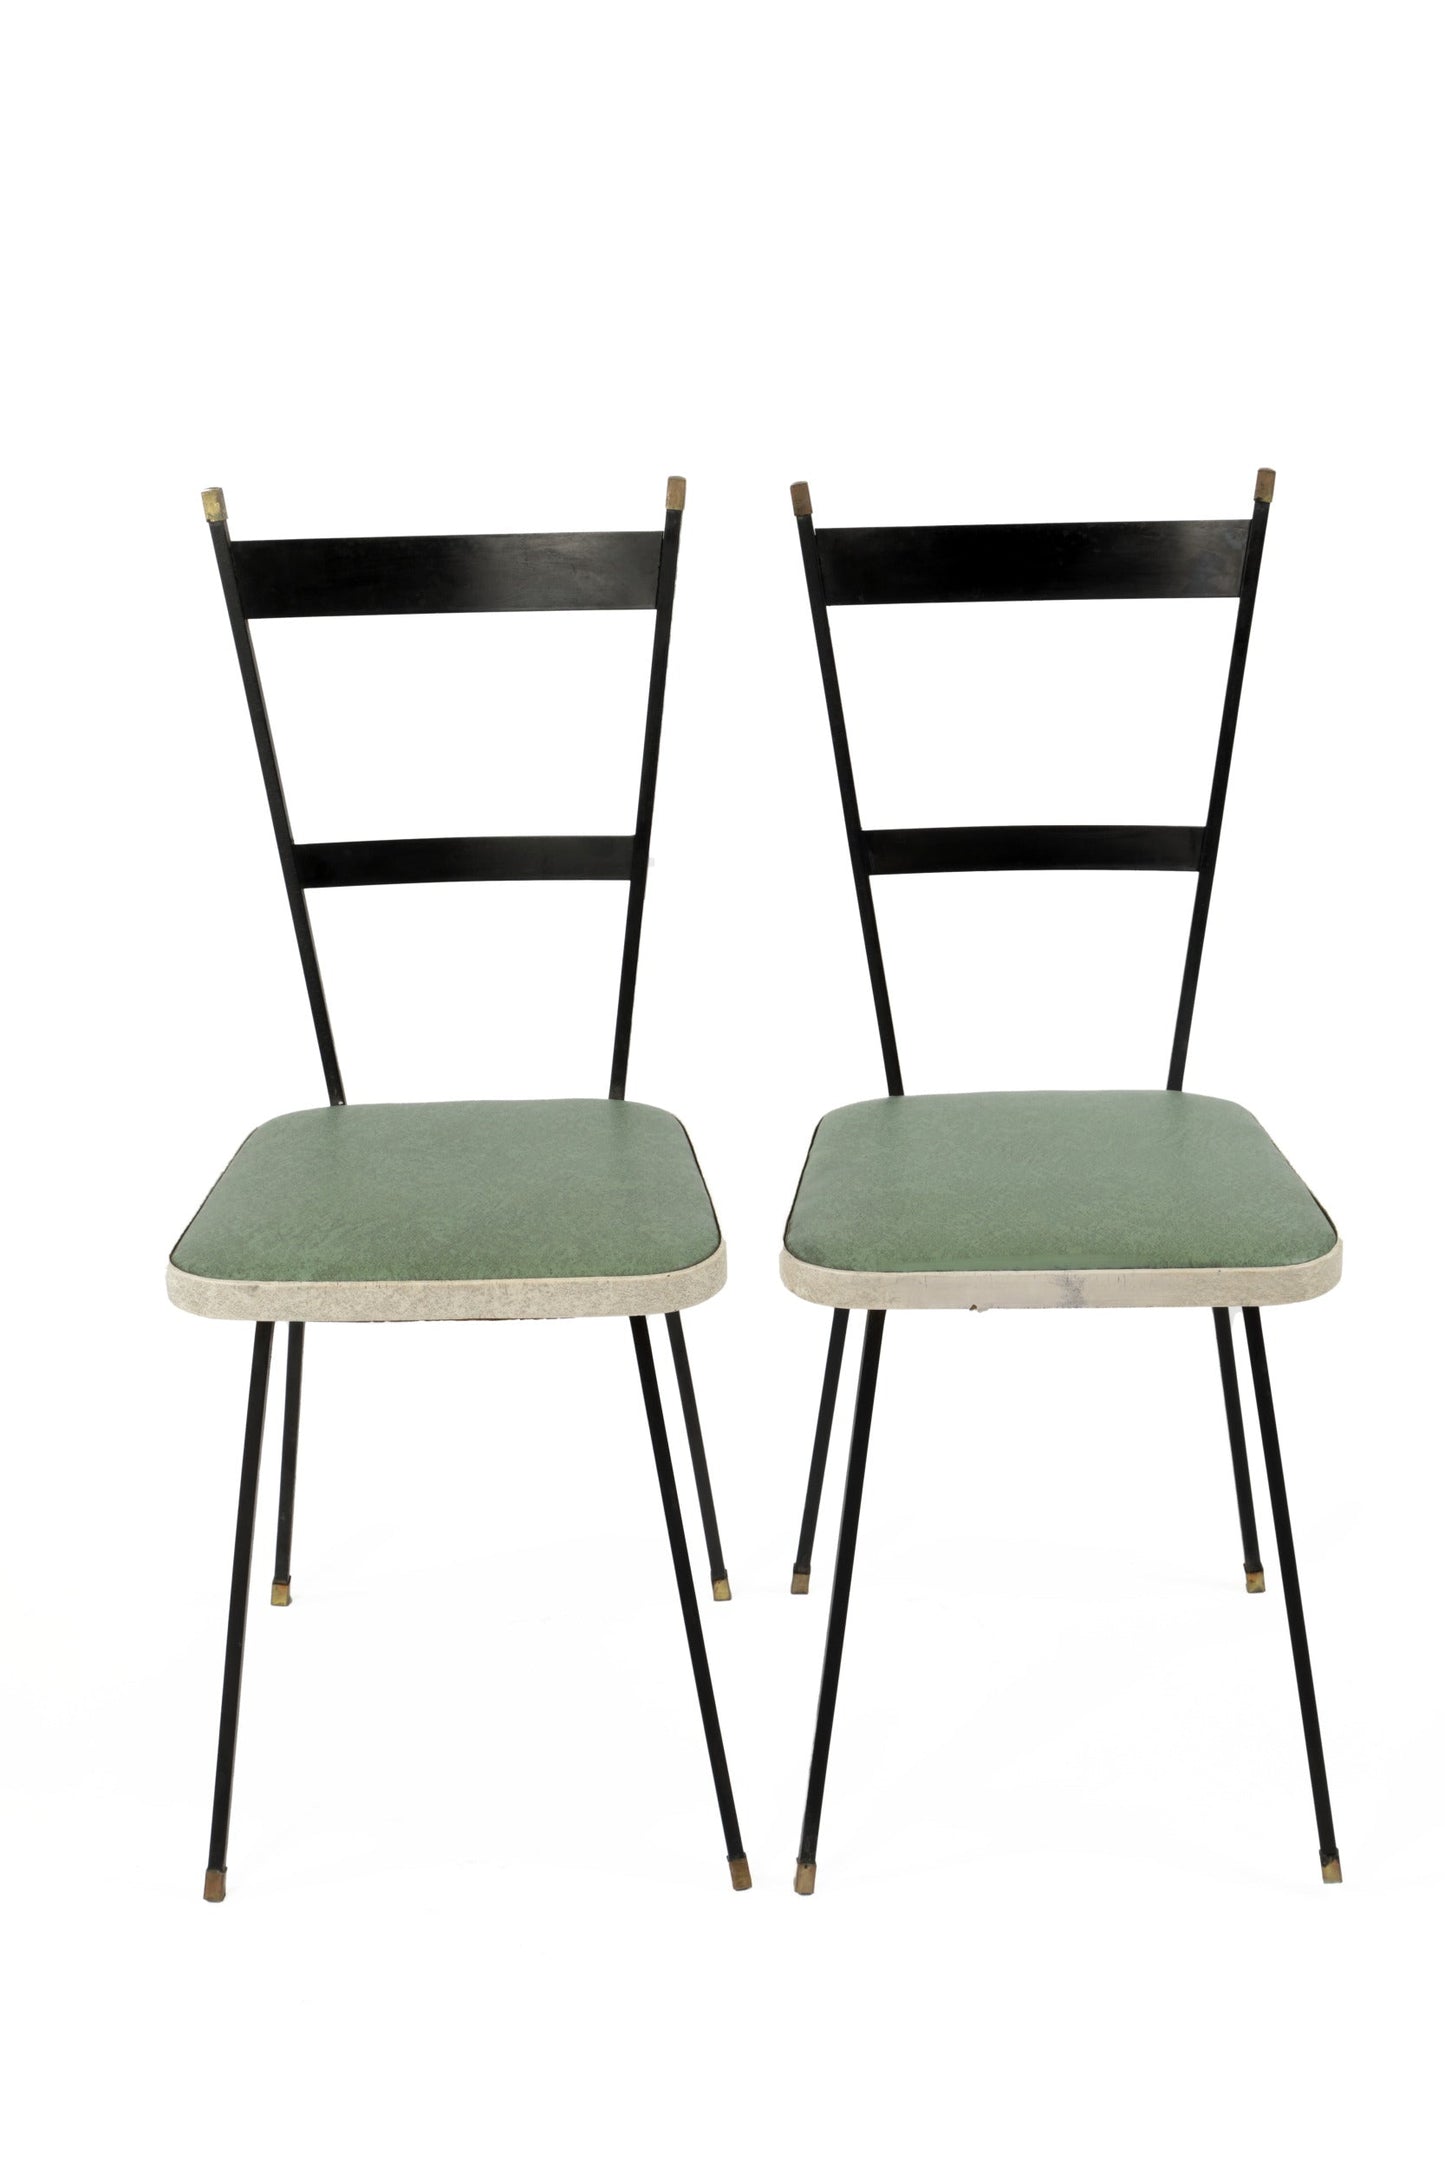 Pair of 1950s iron and skai chairs